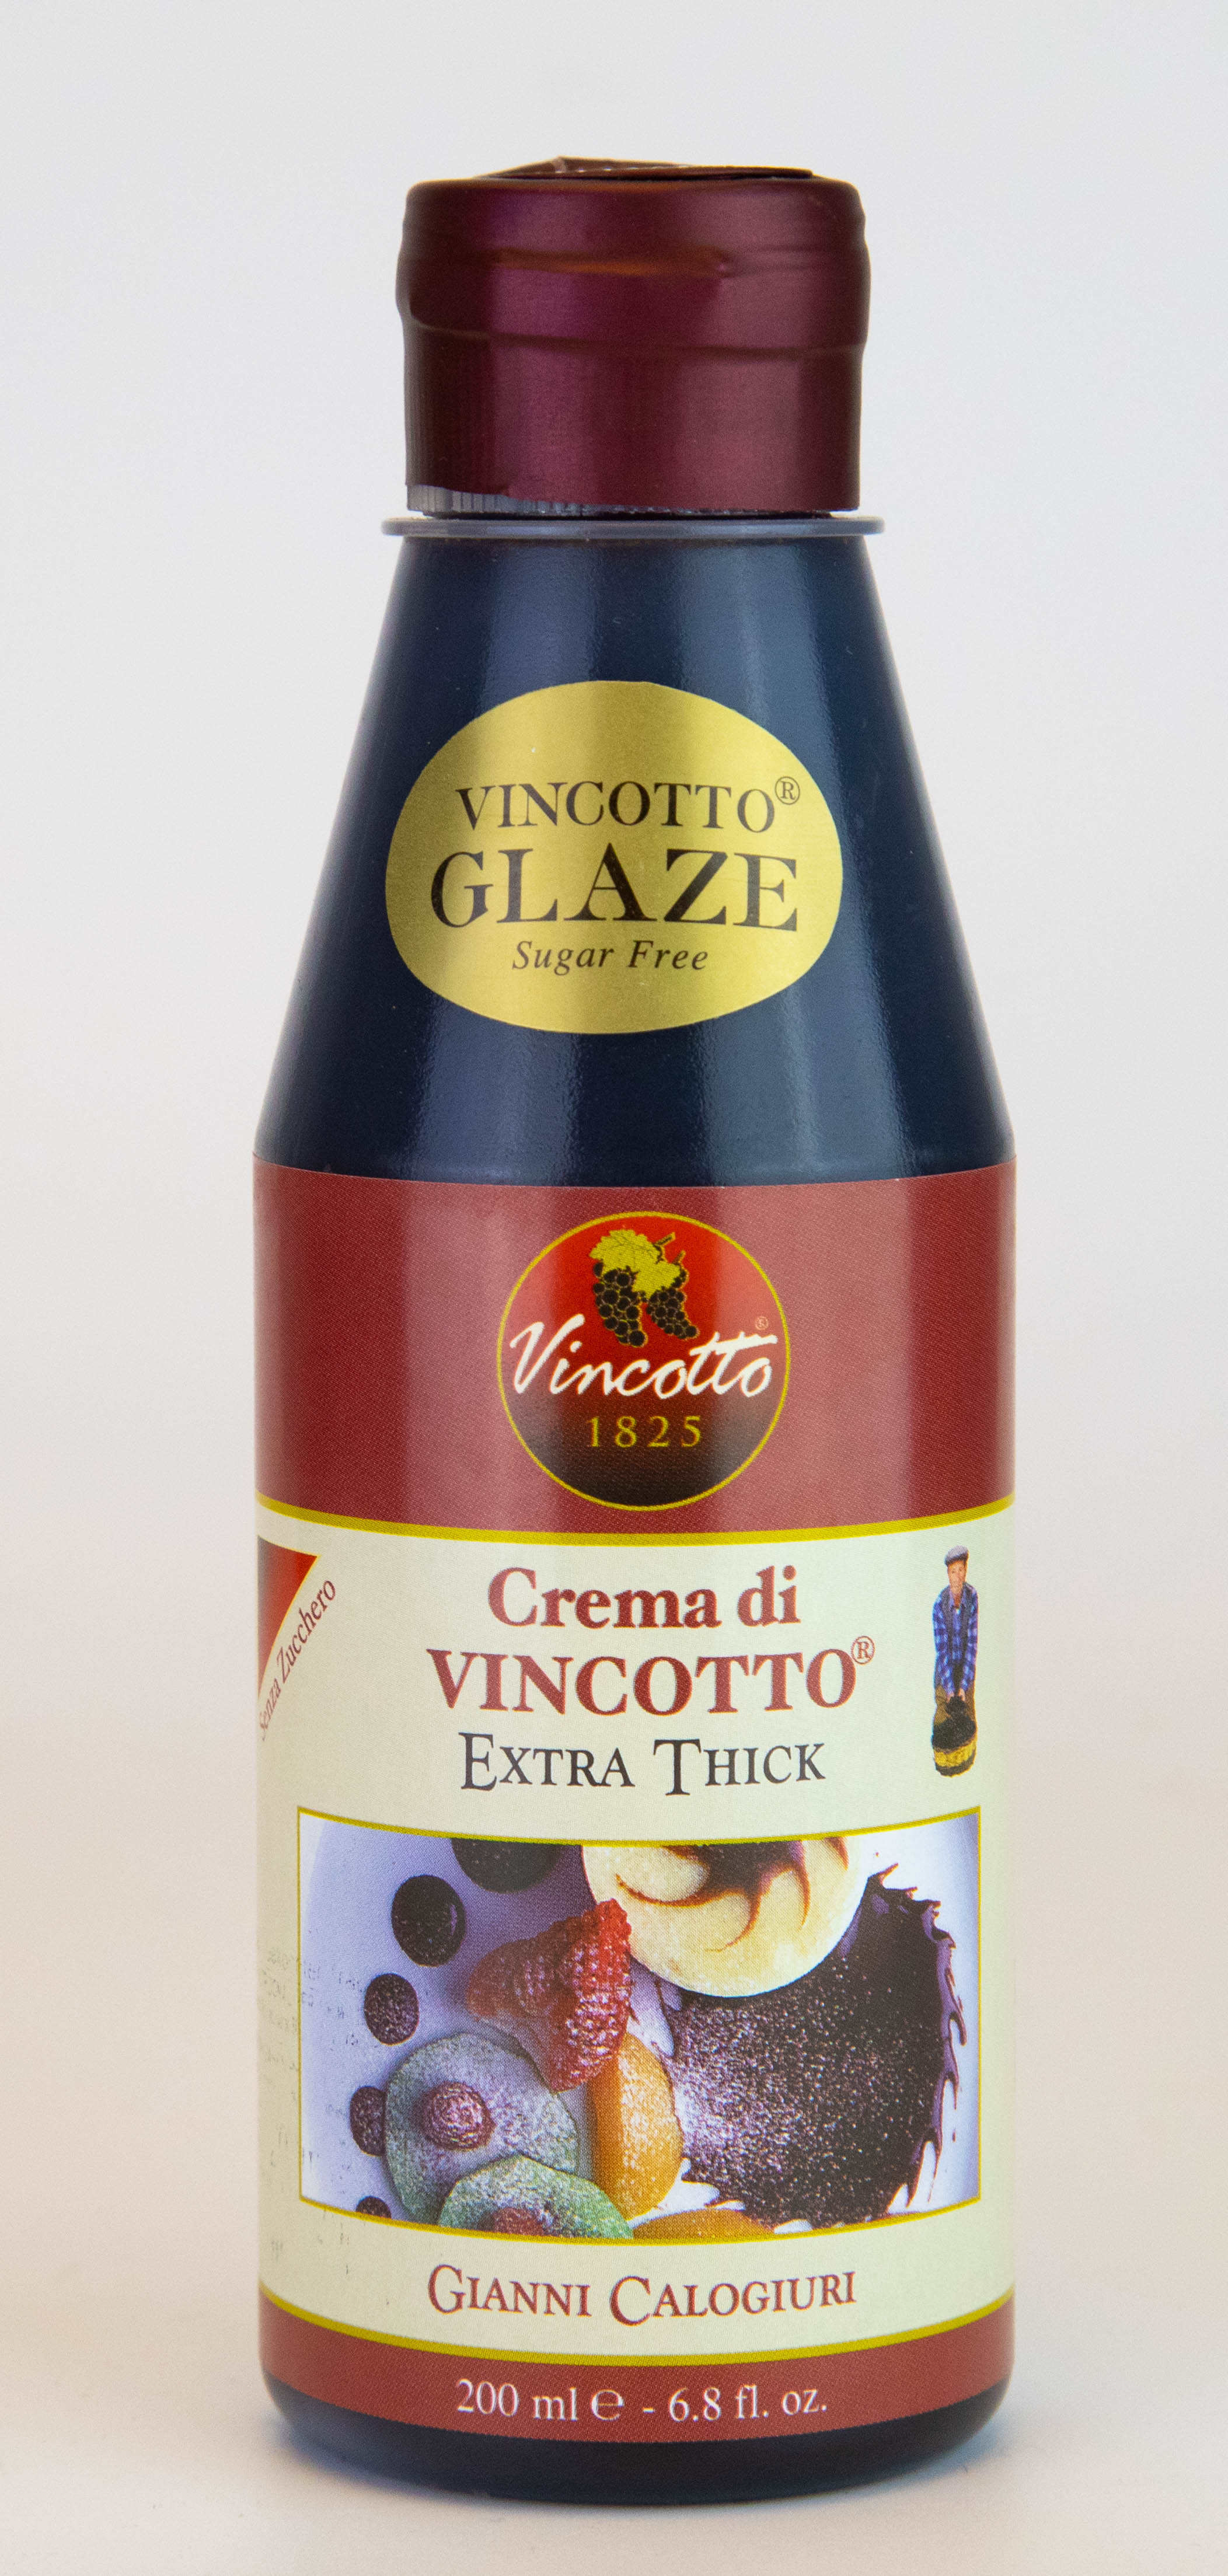 Crema di Vincotto original 200ml bottle